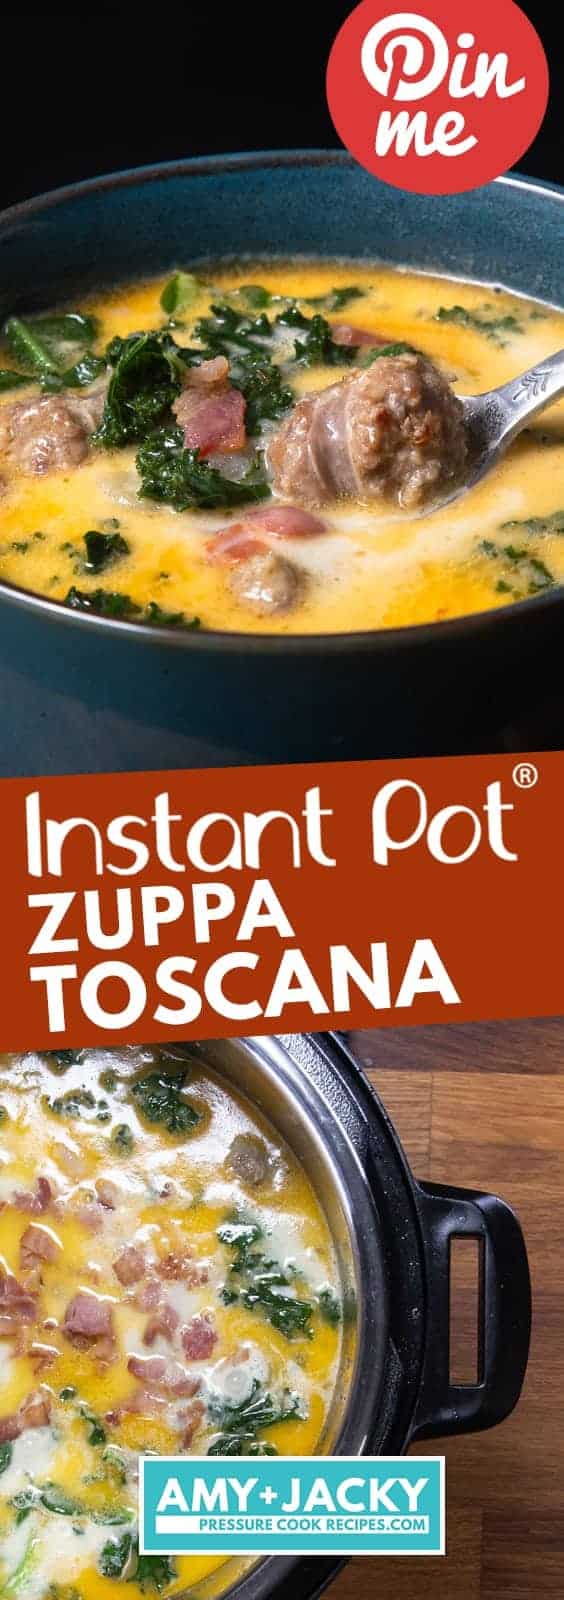 Instant Pot Zuppa Toscana Recipe | Pressure Cooker Zuppa Toscana Soup | Instant Pot Sausage Kale Potato Soup | Instapot Zuppa Toscana | Instant Pot Kale | Instant Pot Soup | Pressure Cooker Soup | Instant Pot Recipes #instantpot #pressurecooker #soup #easy #recipes